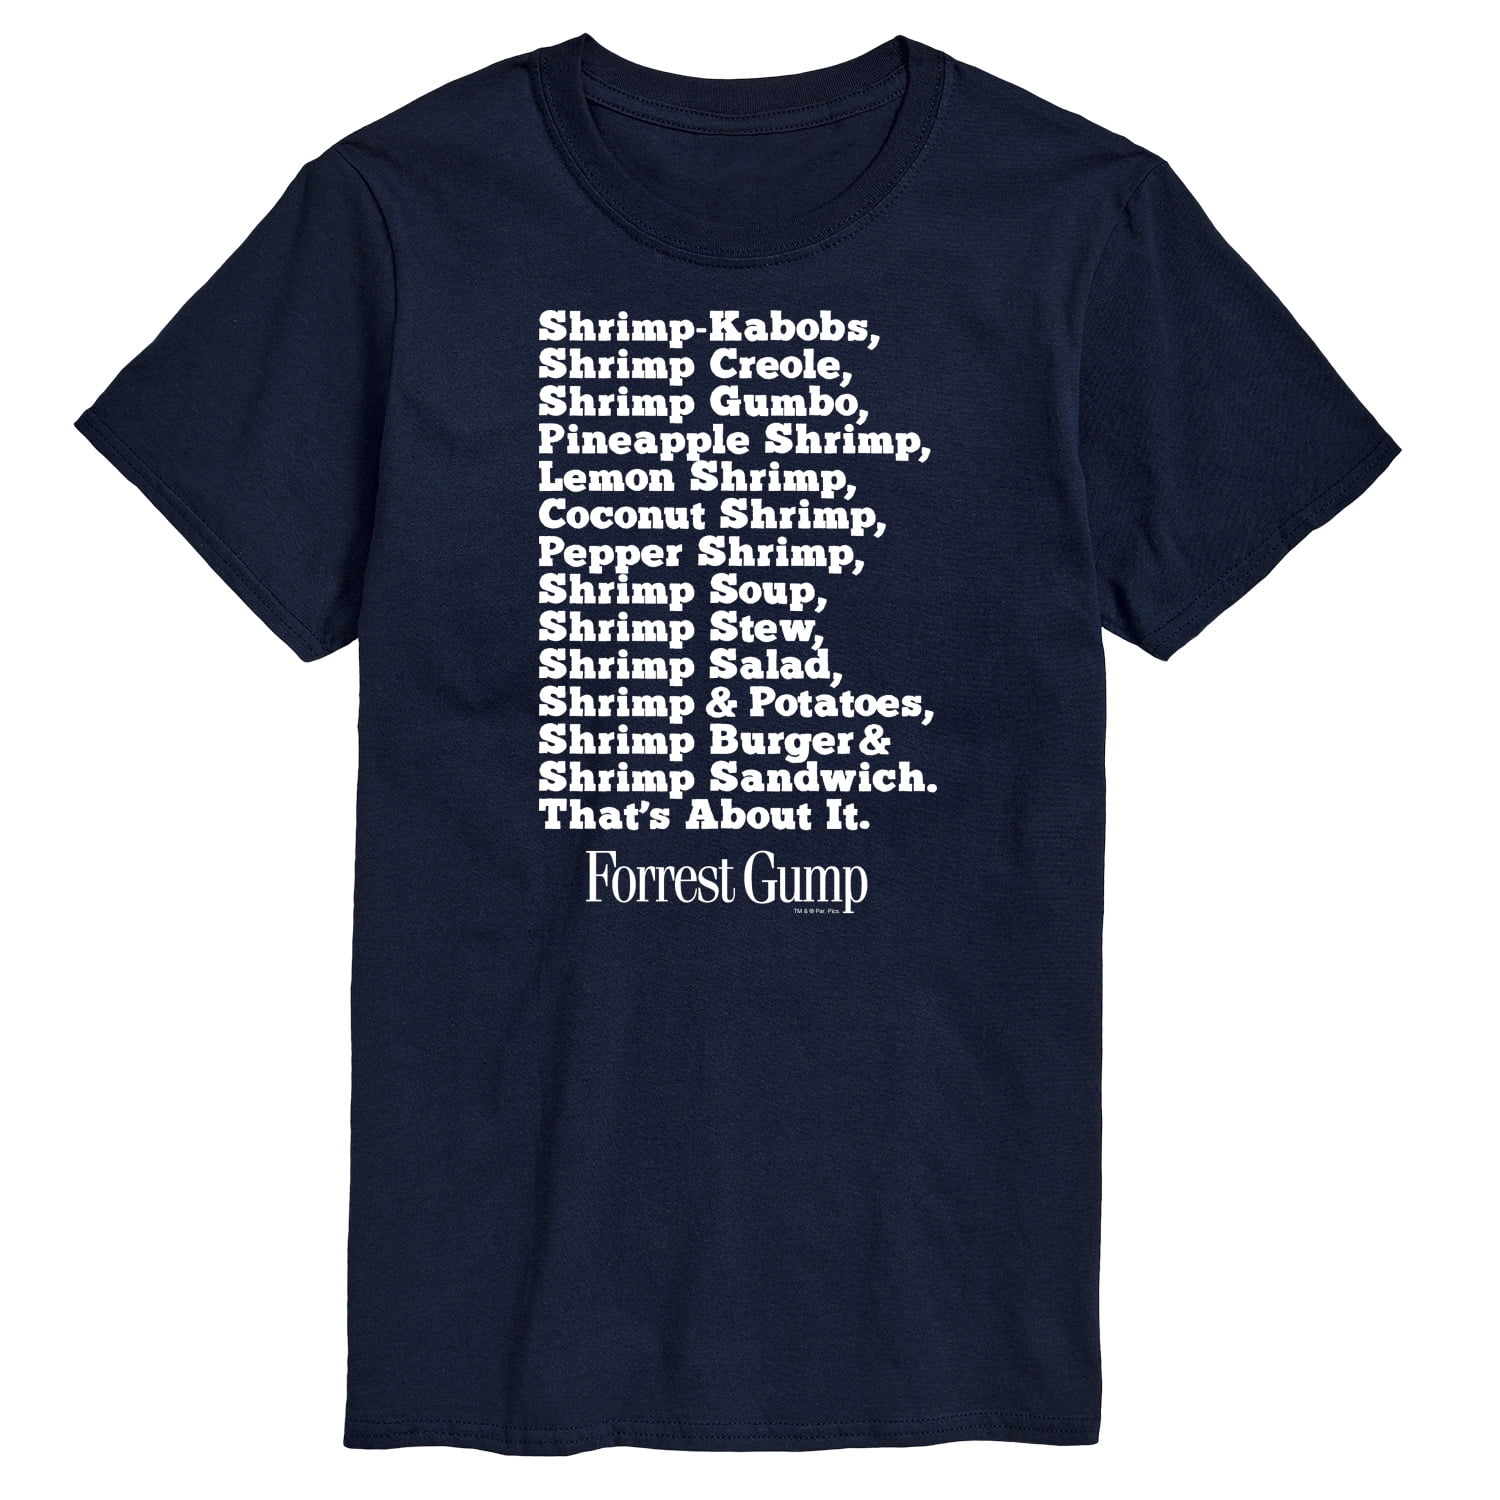 Forrest Gump - Bubbas Shrimp List - Men's Short Sleeve Graphic T-Shirt 